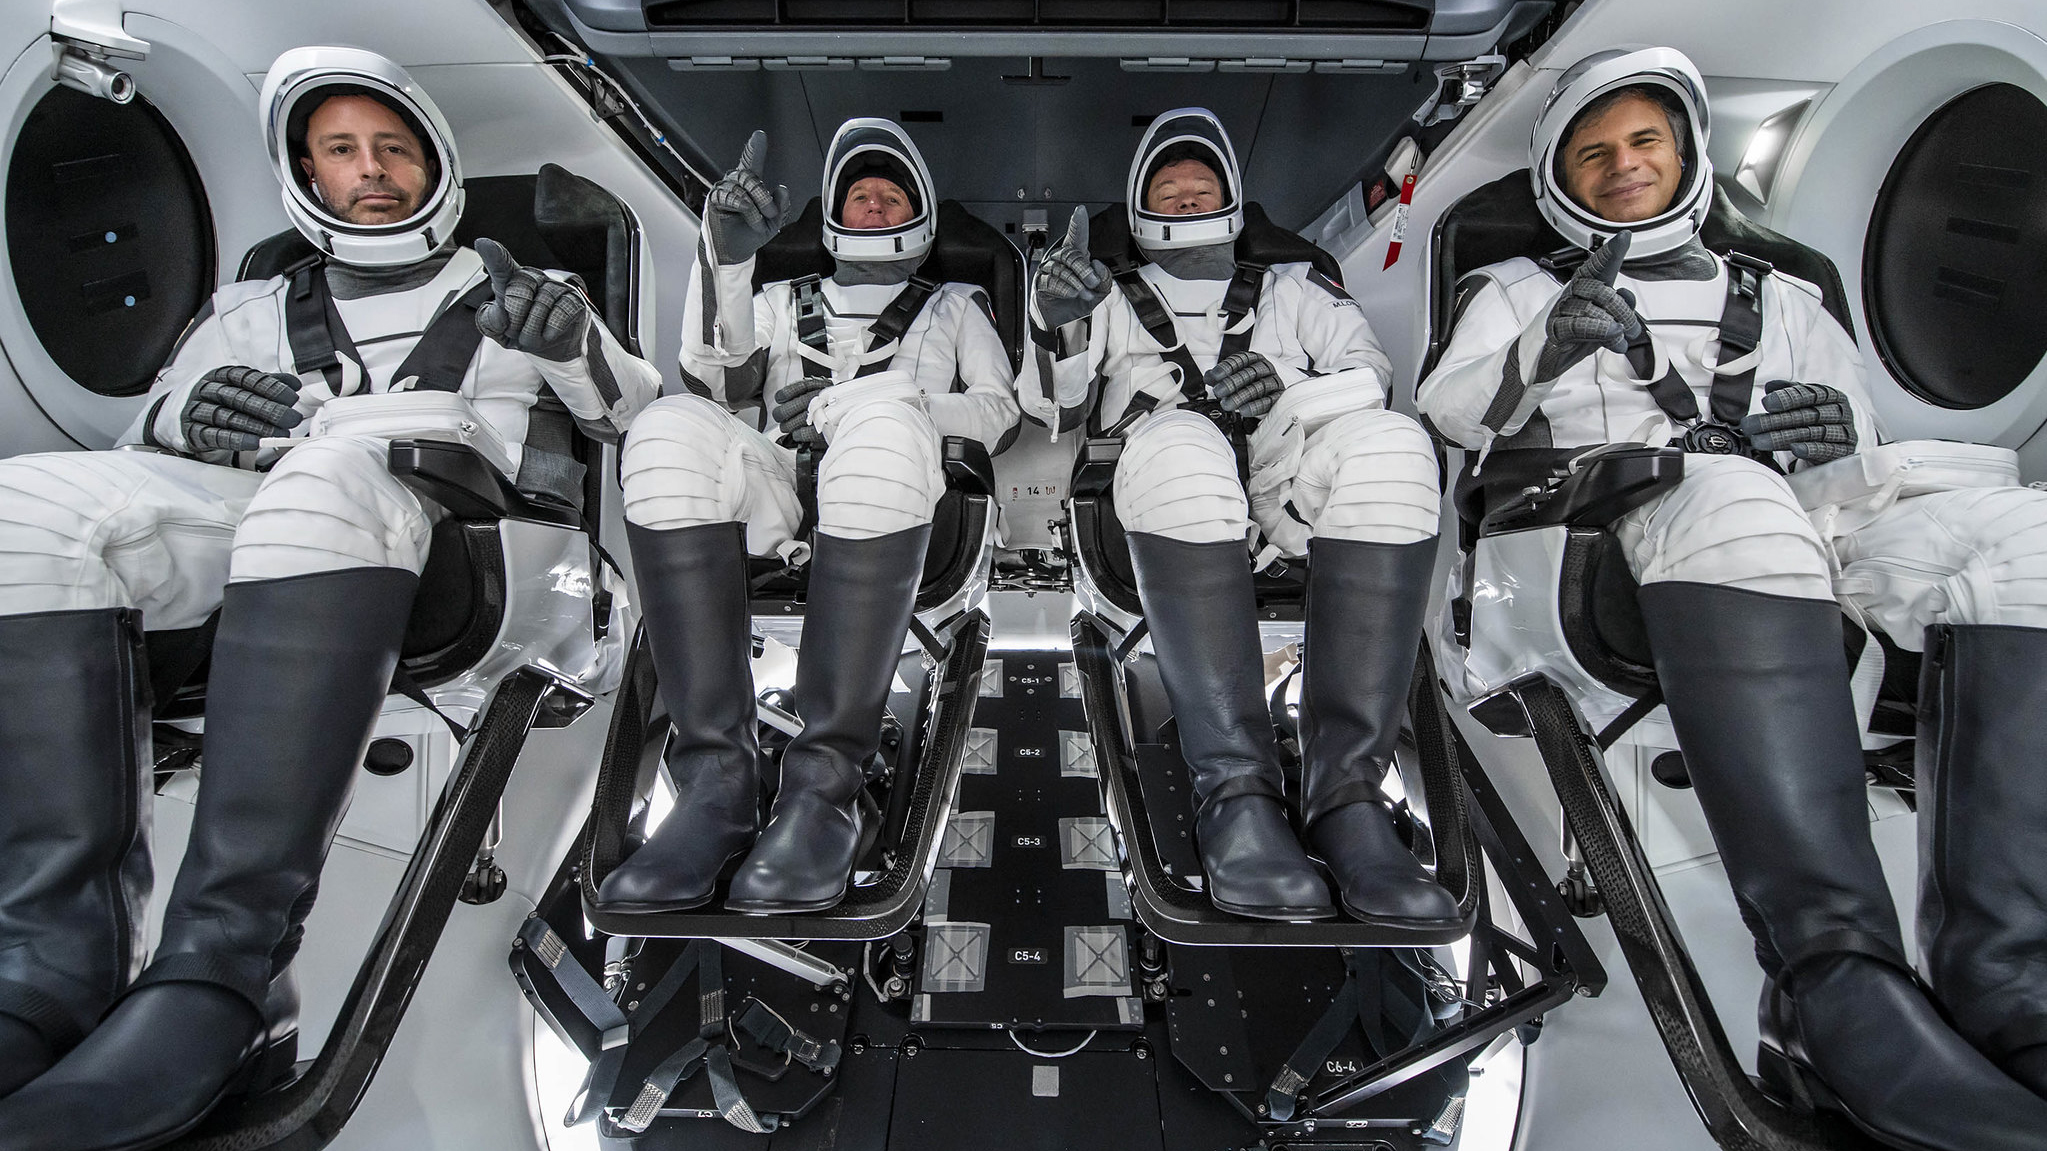 L'équipage de la mission Ax-1 d'Axiom Space pose pour une photo à l'intérieur d'un vaisseau spatial SpaceX Crew Dragon pendant l'entraînement.  Ce sont : (de gauche à droite) Mark Pathy ;  Larry Connor;  Michael Lopez-Alegria;  et Eytan Stibbe.